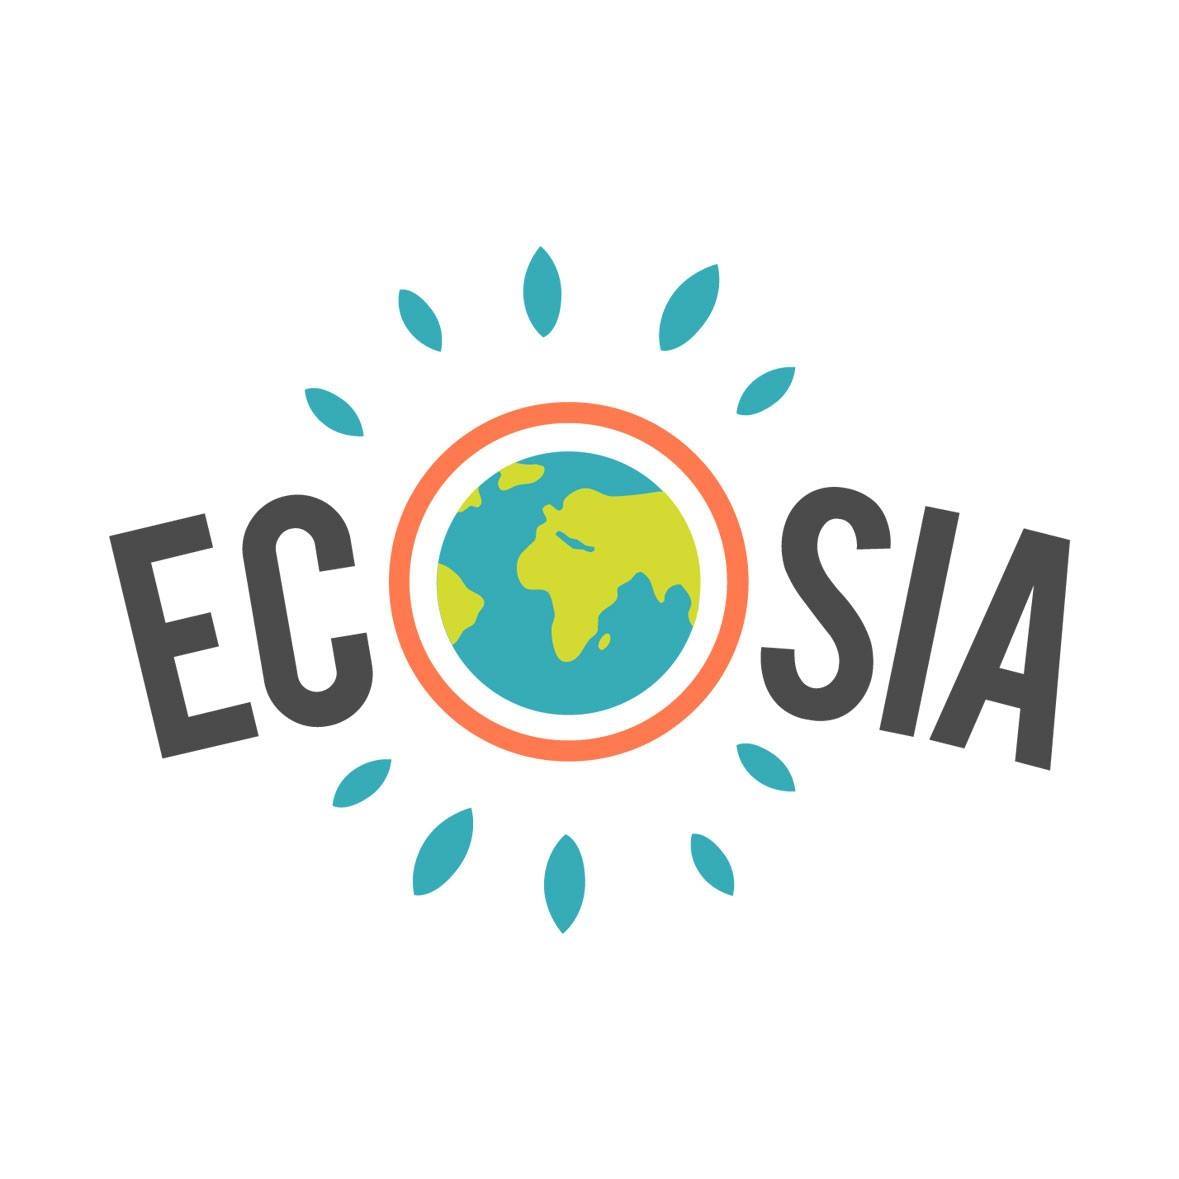 écosia moteur de recherche éco-responsable Viv'Event agence événementielle éco-responsable